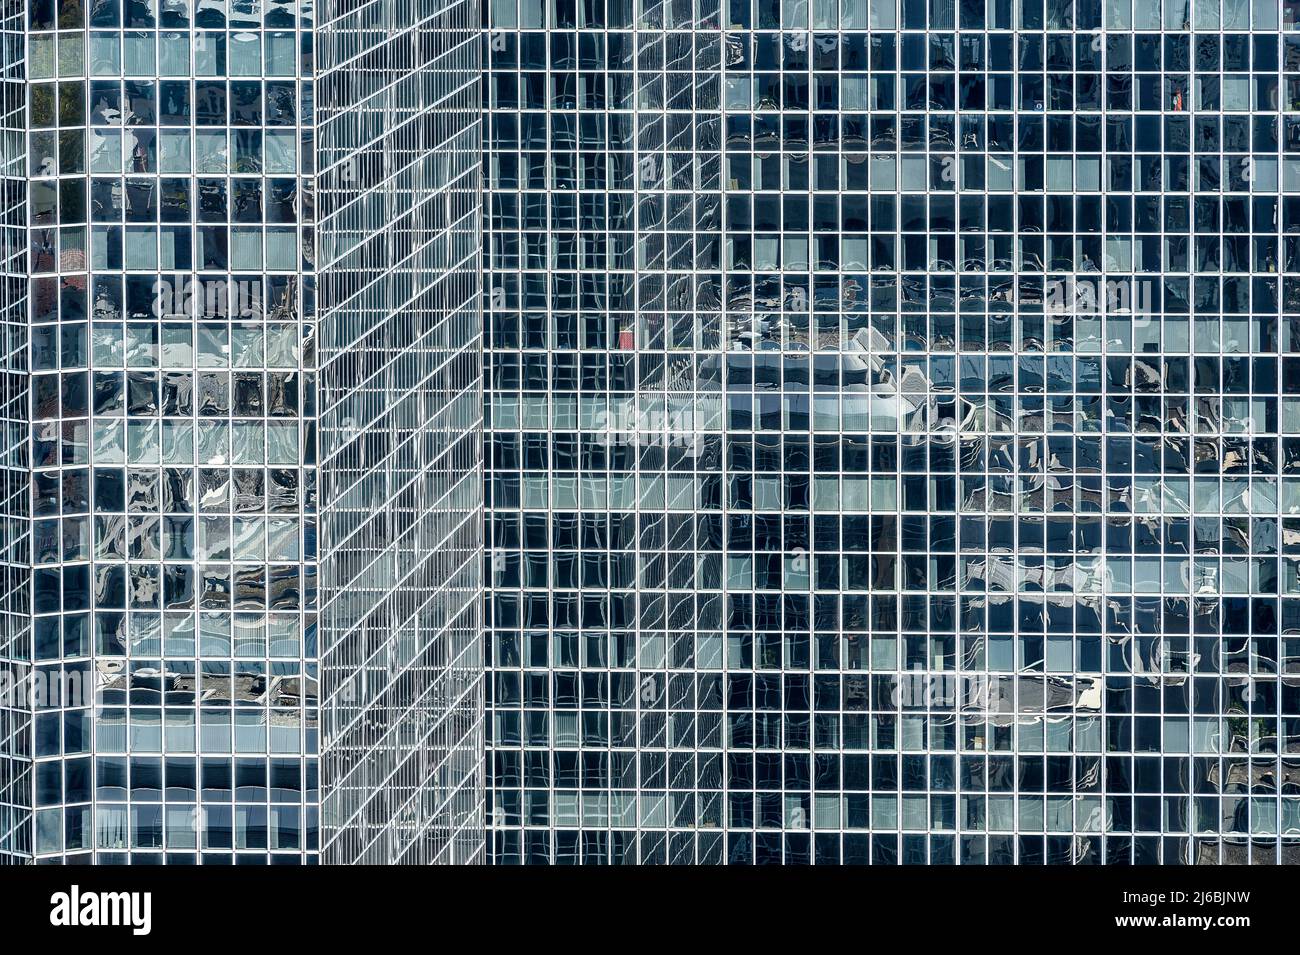 Espace de Bureau dans les immeubles a Bruxelles - Bürorundgang Ian Immobilien in den Gebäuden im Norden von Brüssel Stockfoto